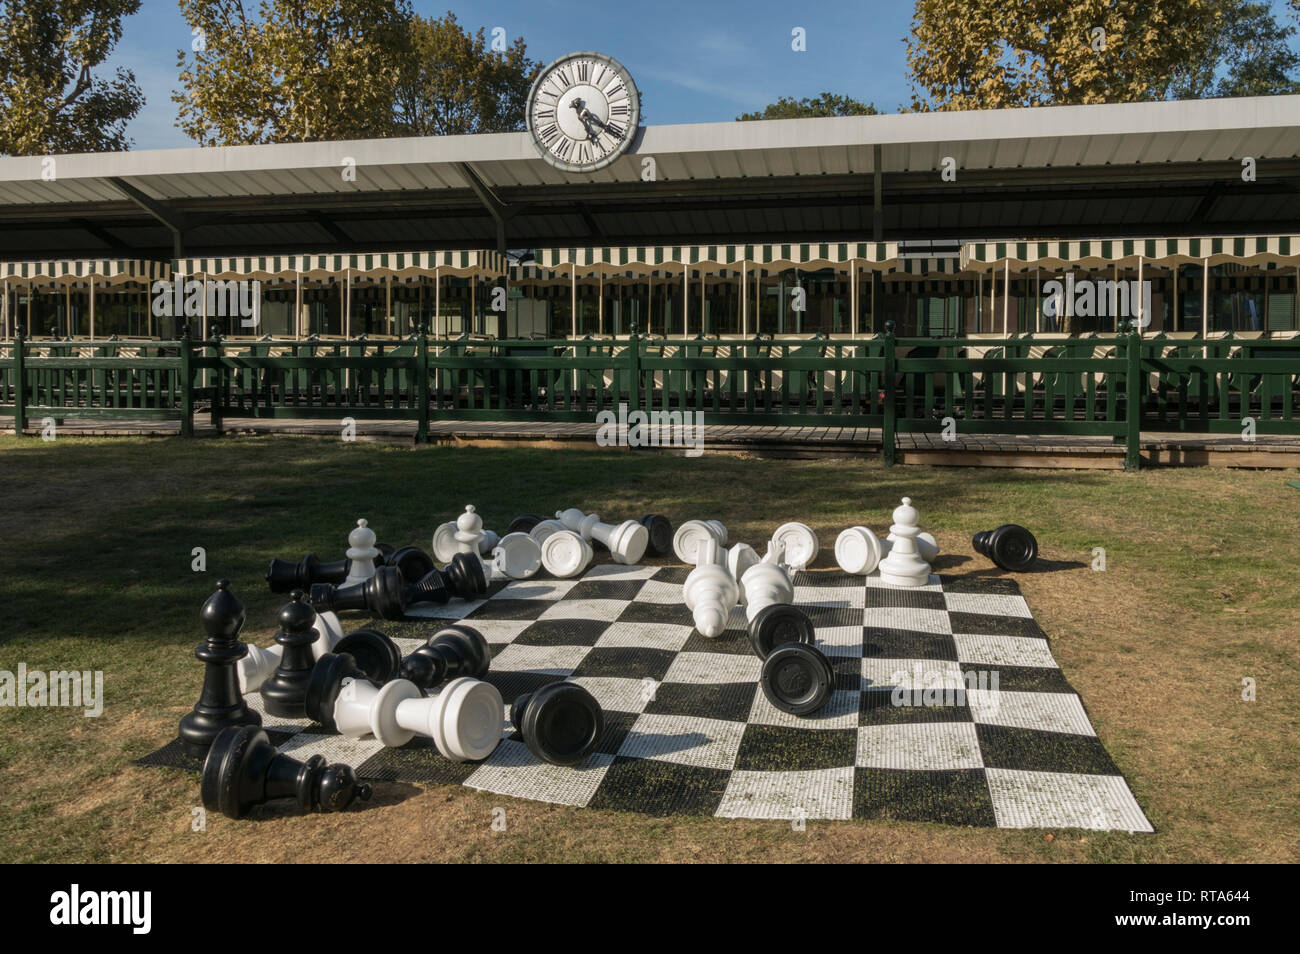 Jardin d'Acclimatation vor Kurzem renoviert wurde dieses Pariser touristische Attraktion zu seiner ehemaligen Pracht wieder in Kraft zu setzen. Stockfoto